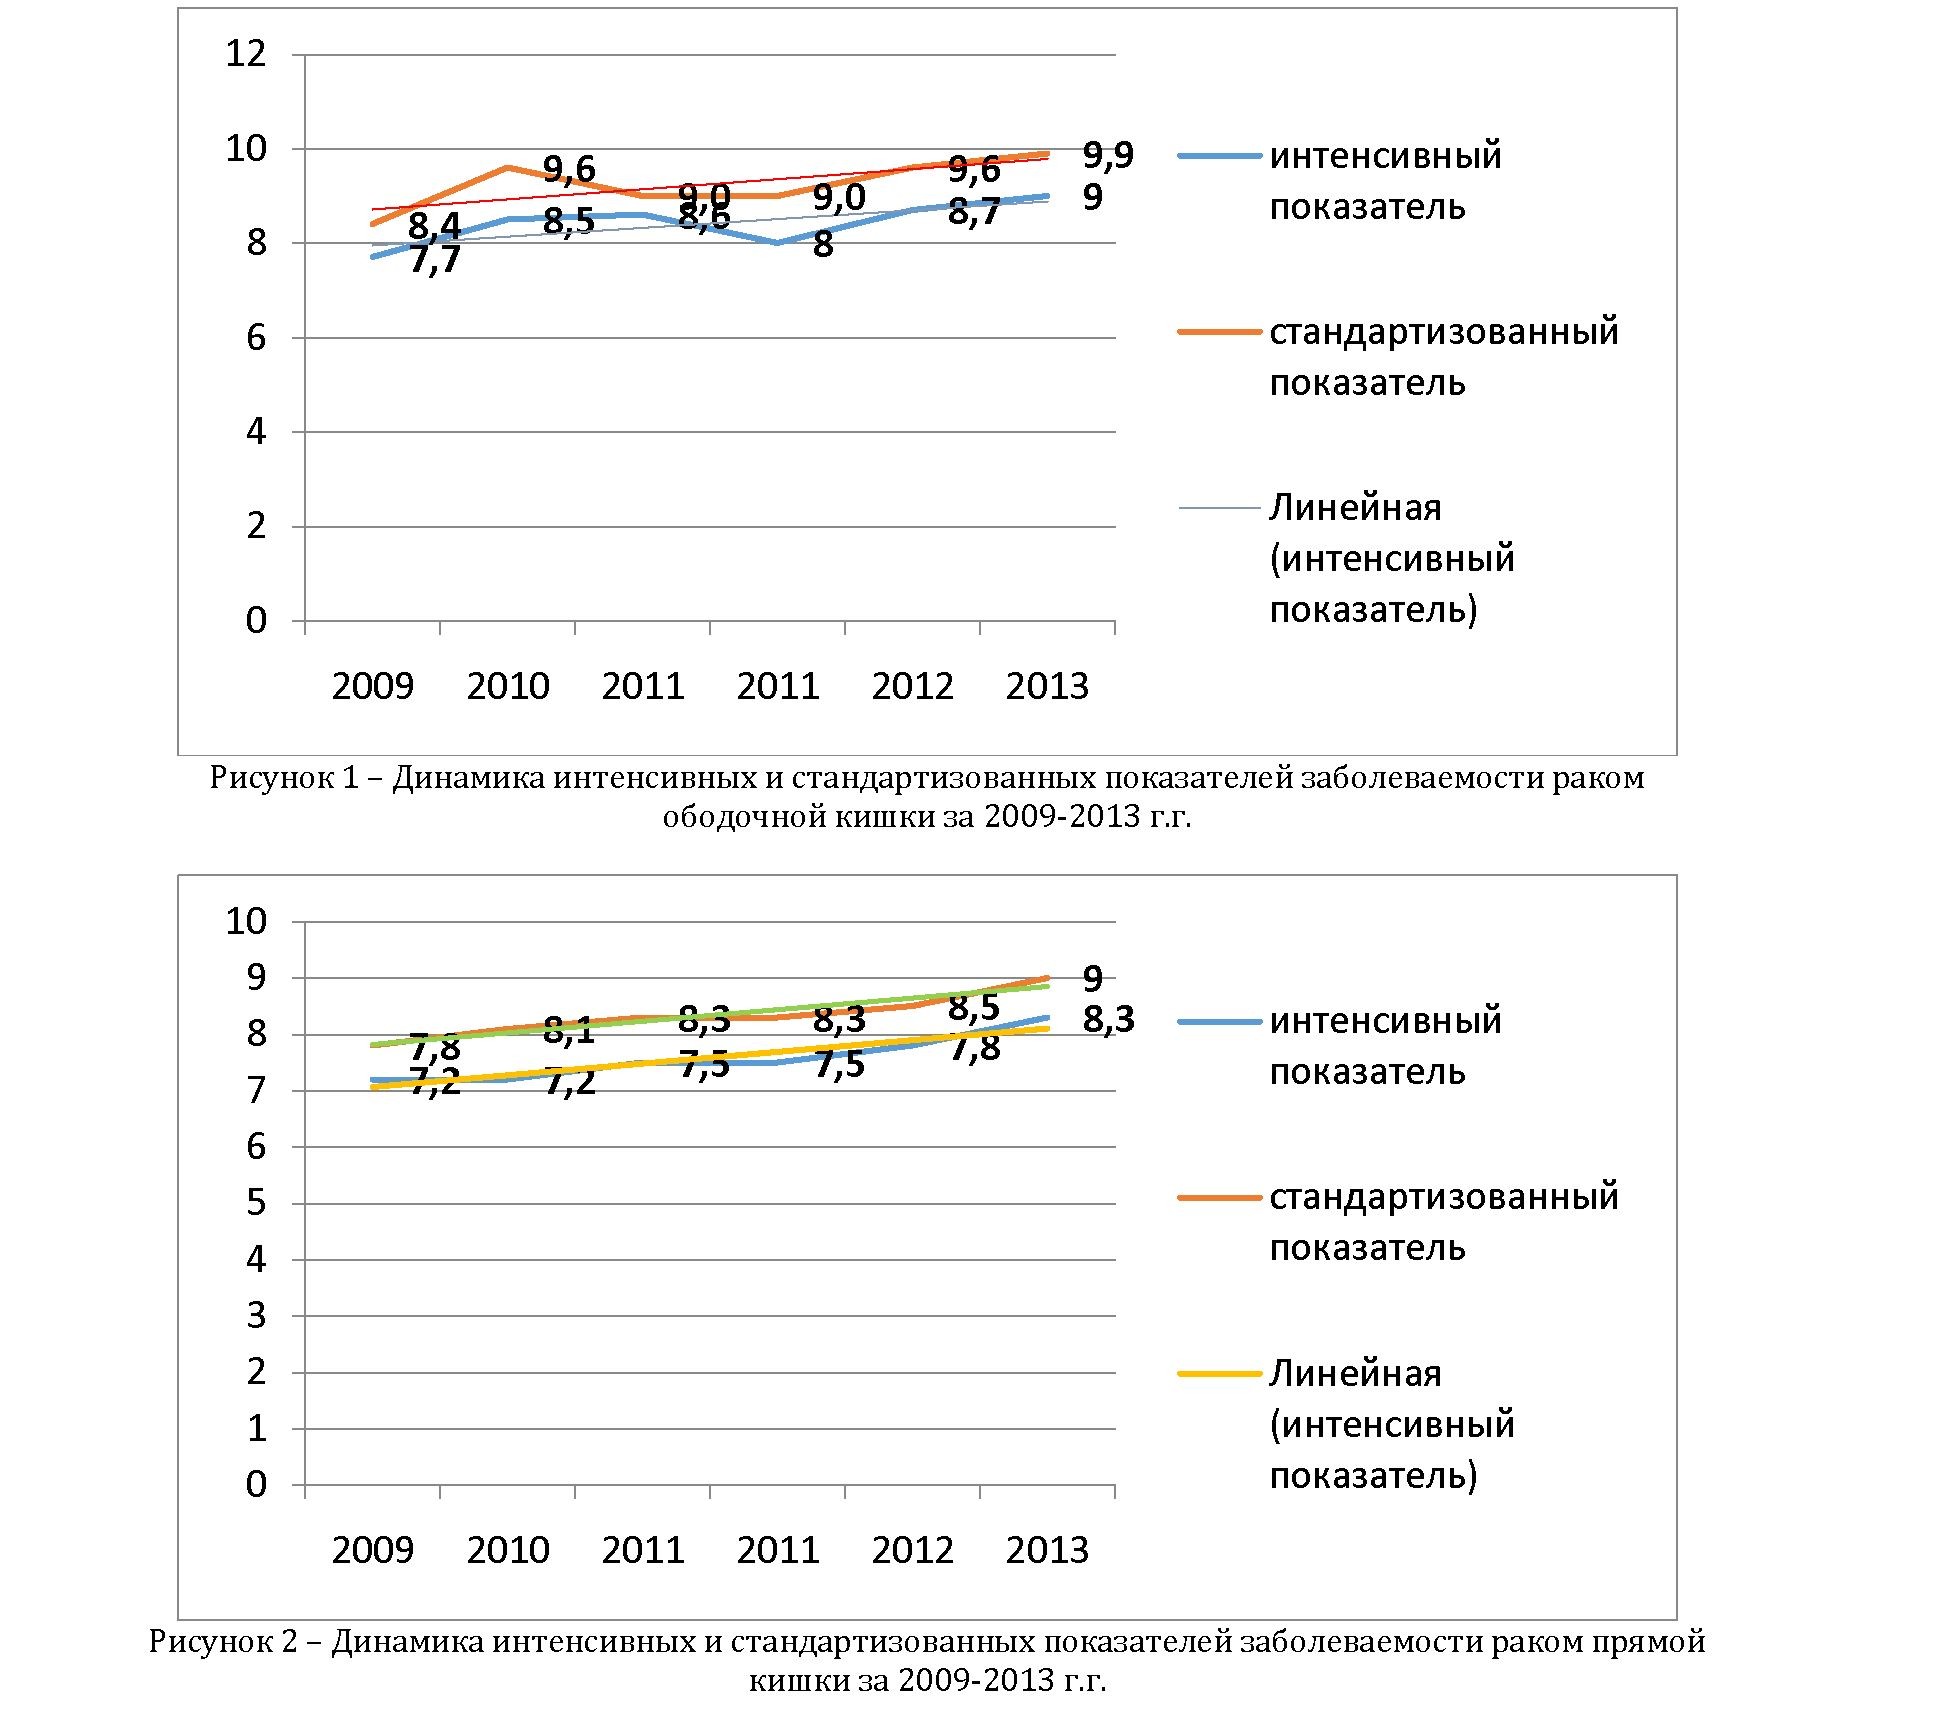 Анализ заболеваемости колоректальным раком в республике Казахстан в 2009-2013 гг